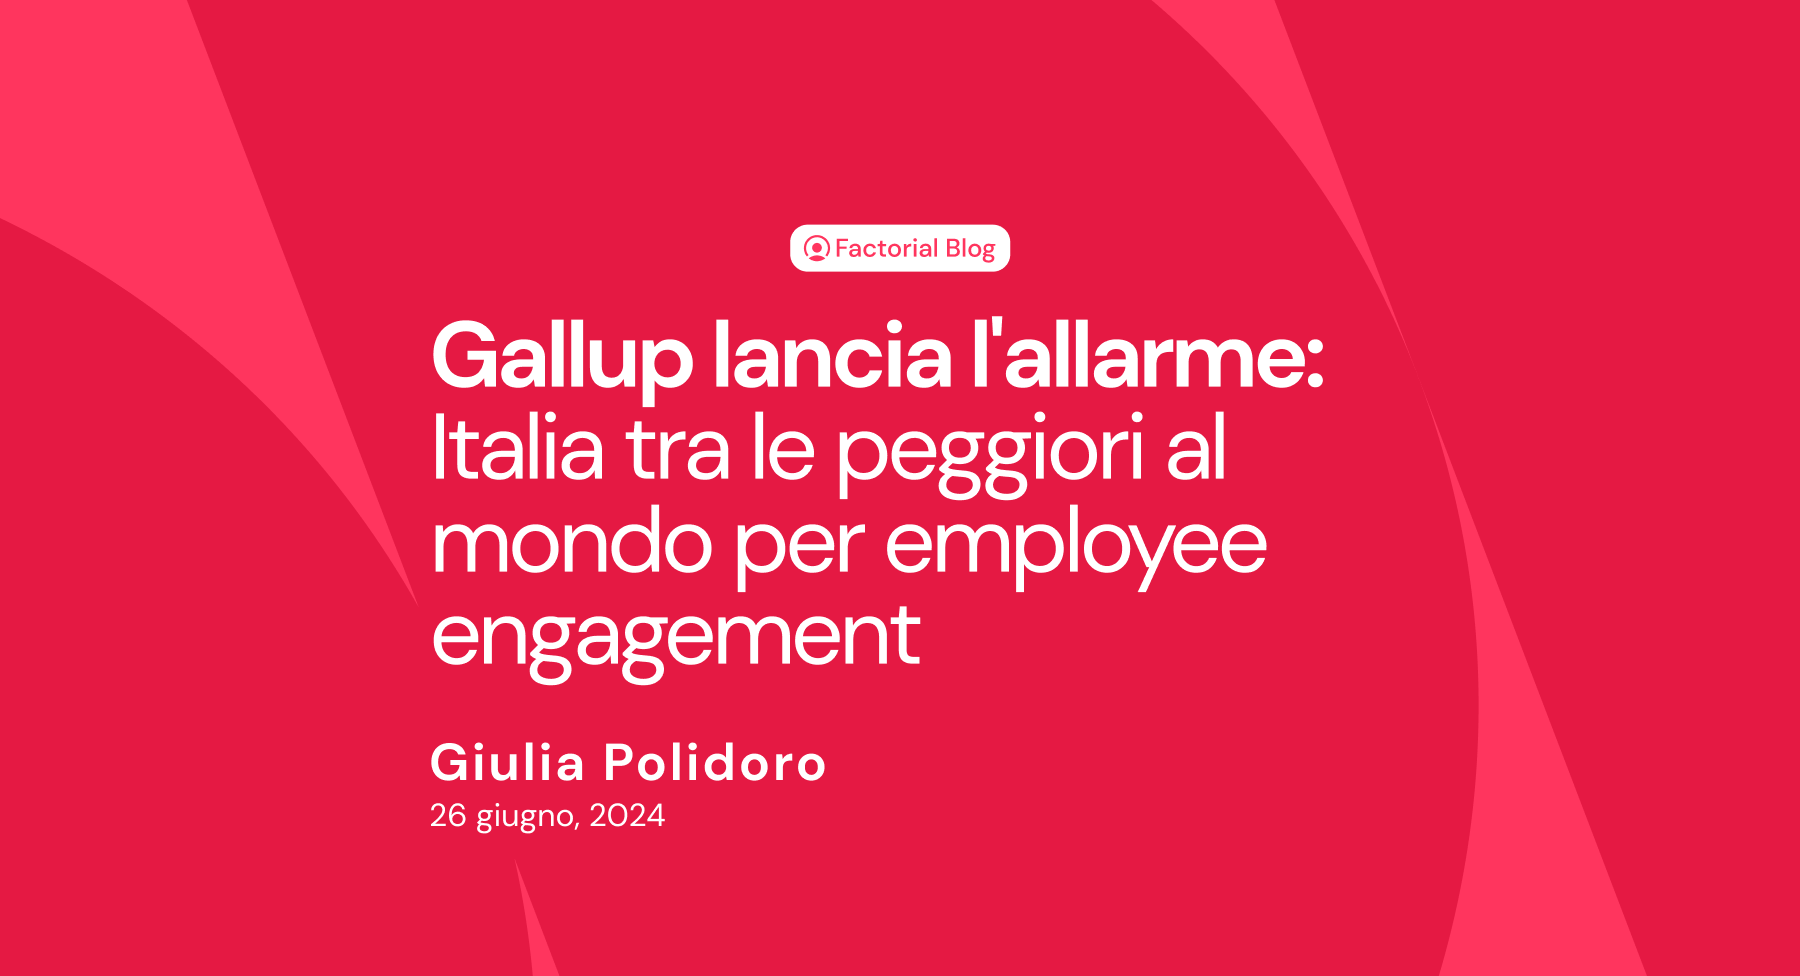 Gallup lancia l'allarme: Italia tra le peggiori al mondo per employee engagement